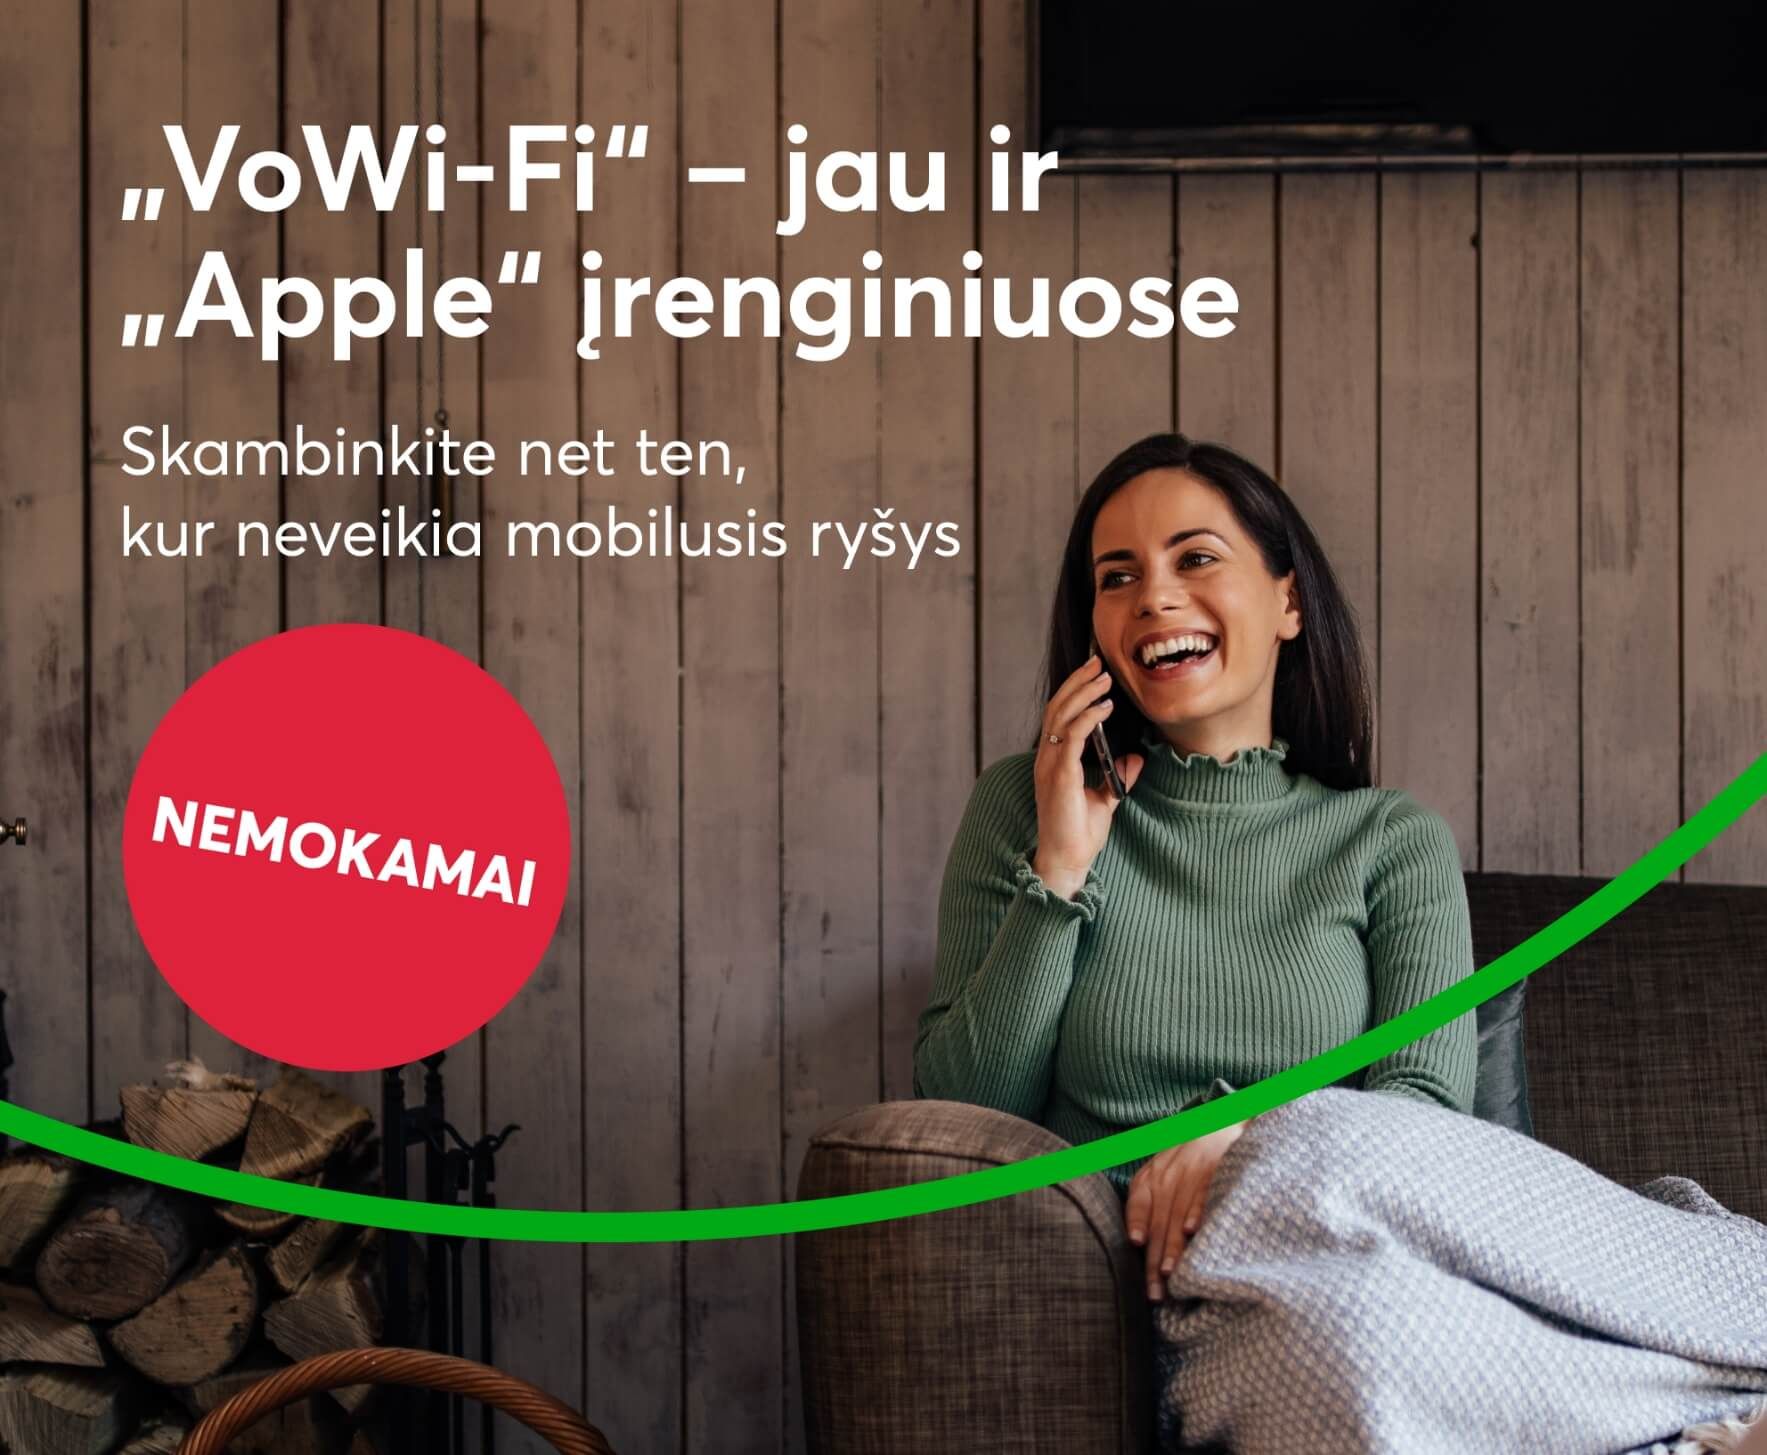 VoWi-Fi jau ir Apple įrenginiuose